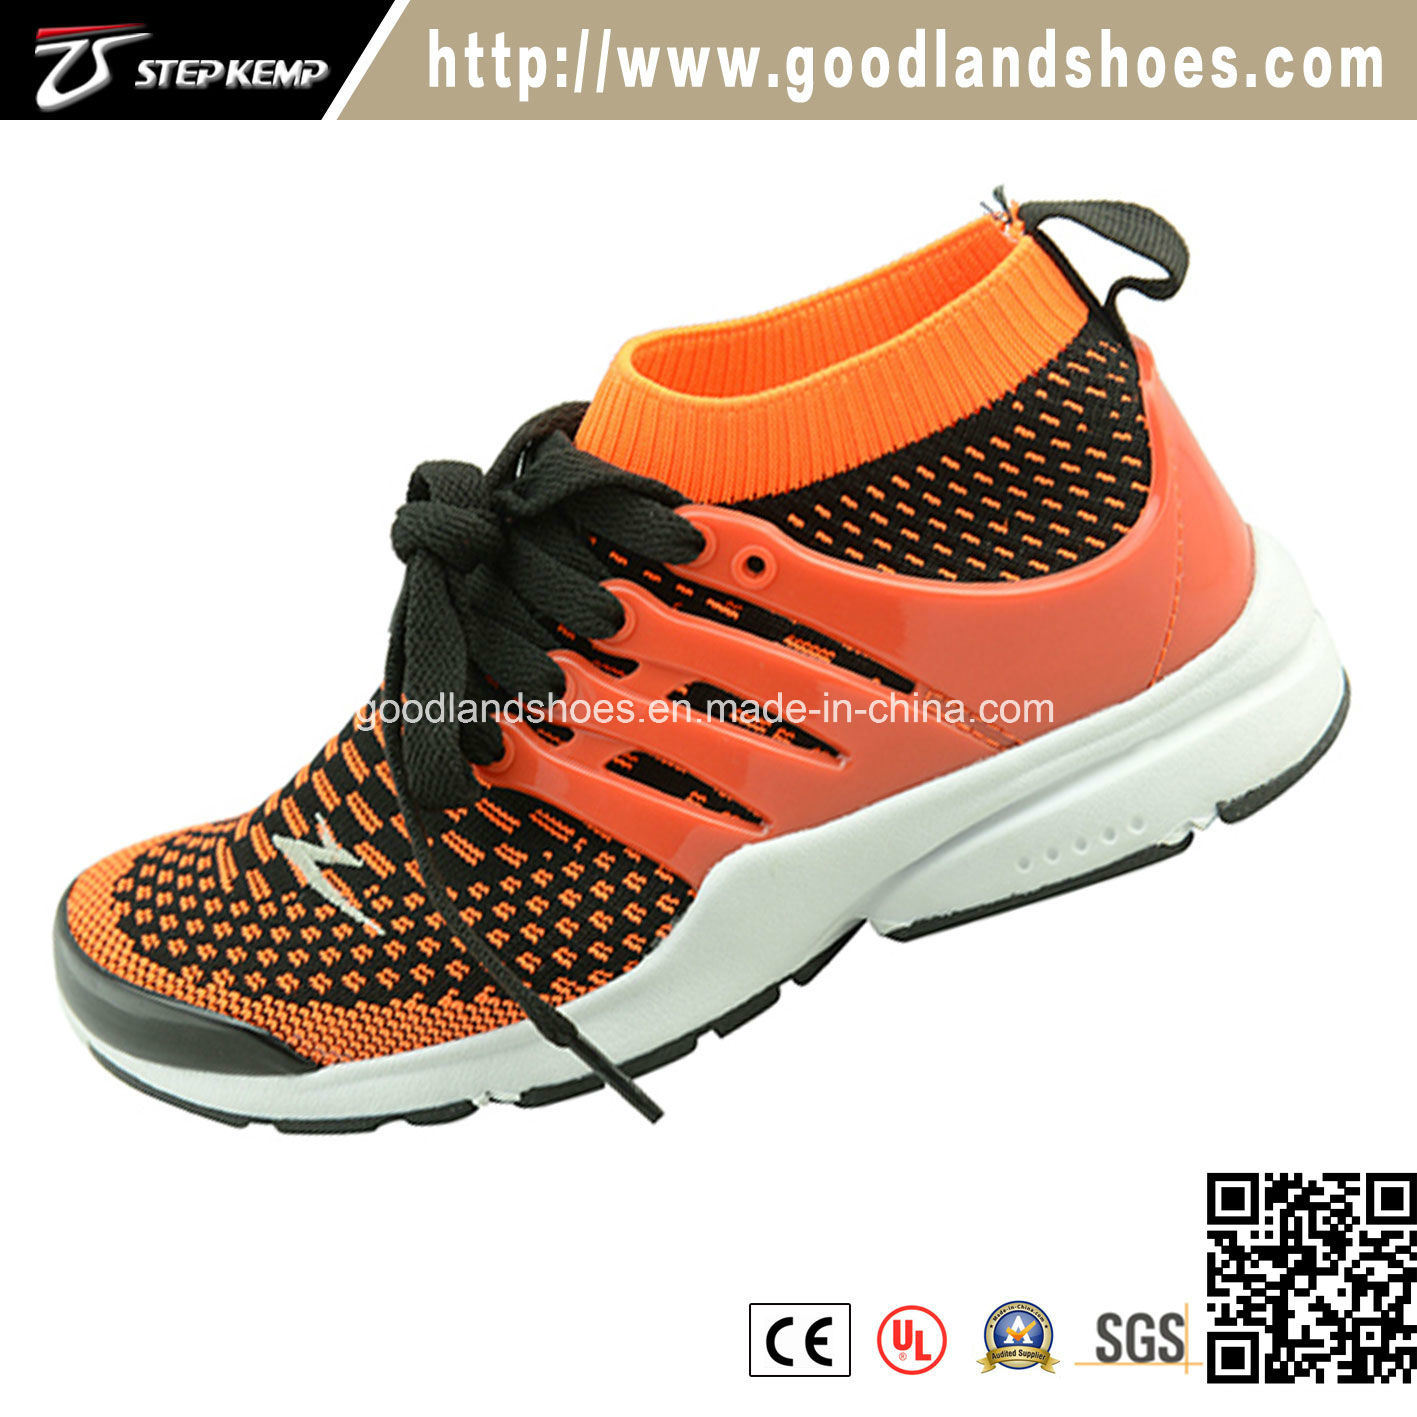 New Arrival Sneakers, Footwear Skate Flyknit Children Shoes 16026-2